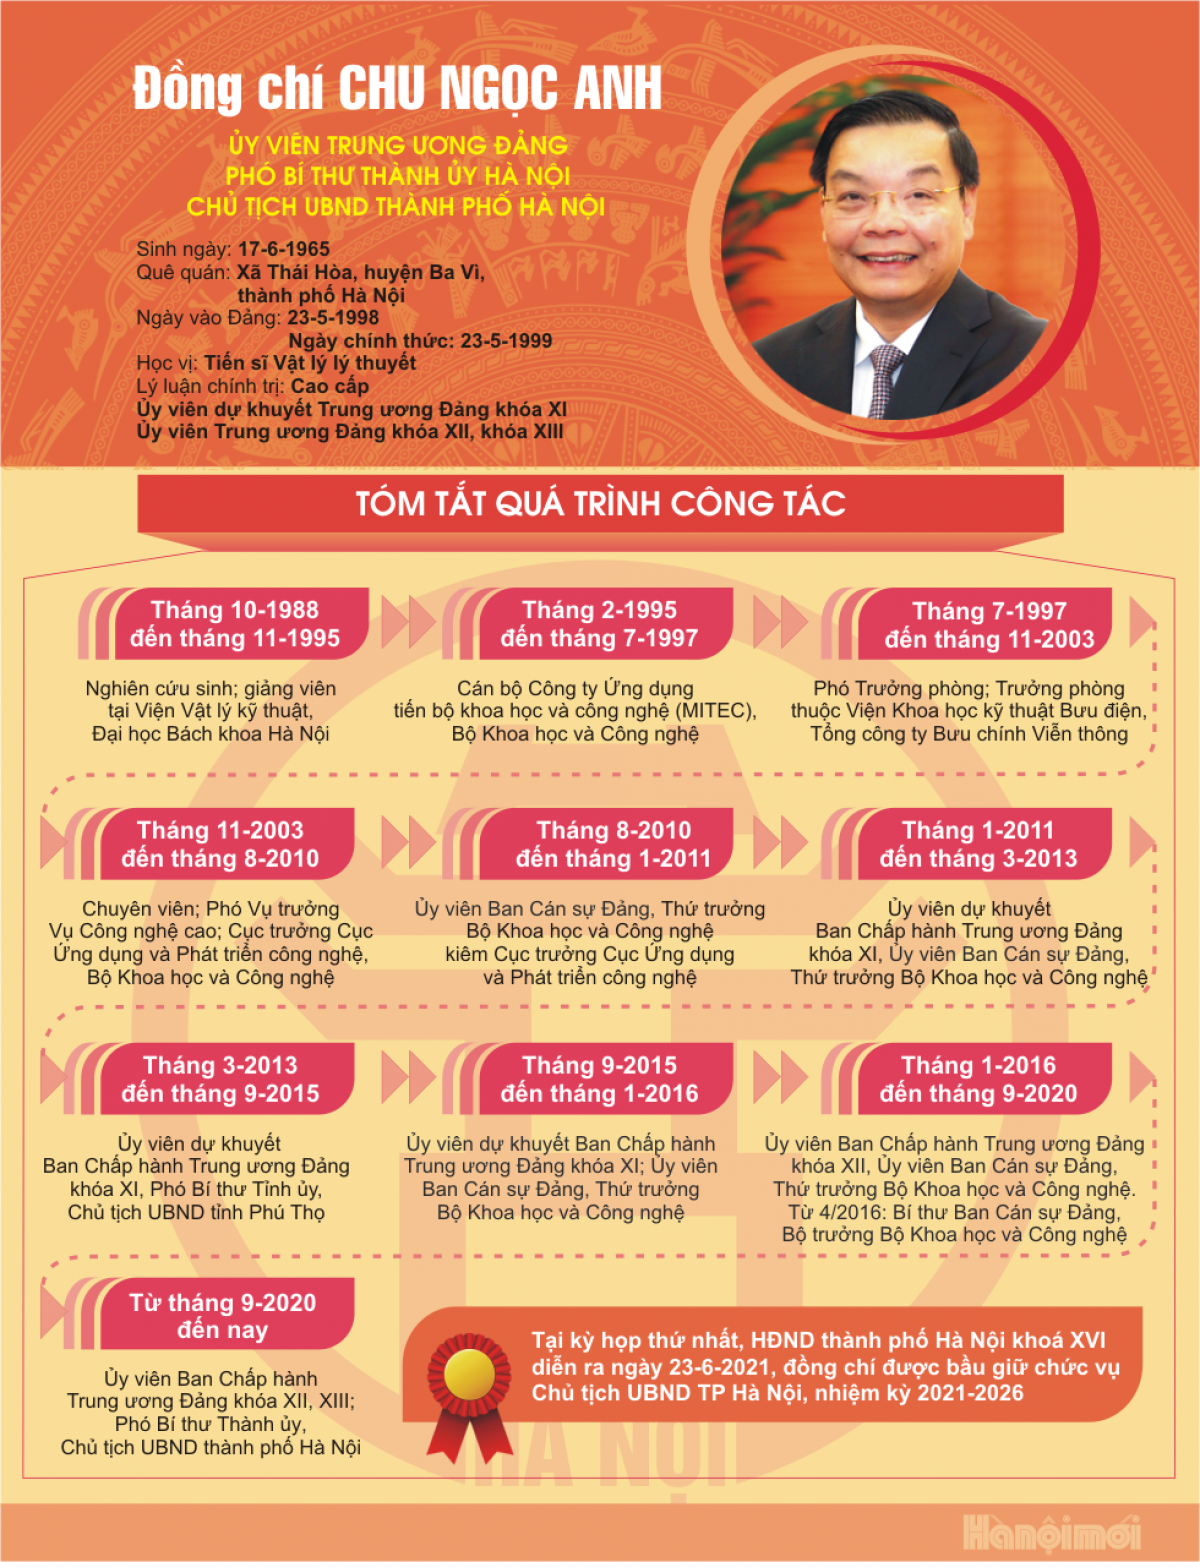 Ông Chu Ngọc Anh tái đắc cử Chủ tịch UBND TP Hà Nội nhiệm kỳ 2021-2026 - Ảnh 2.